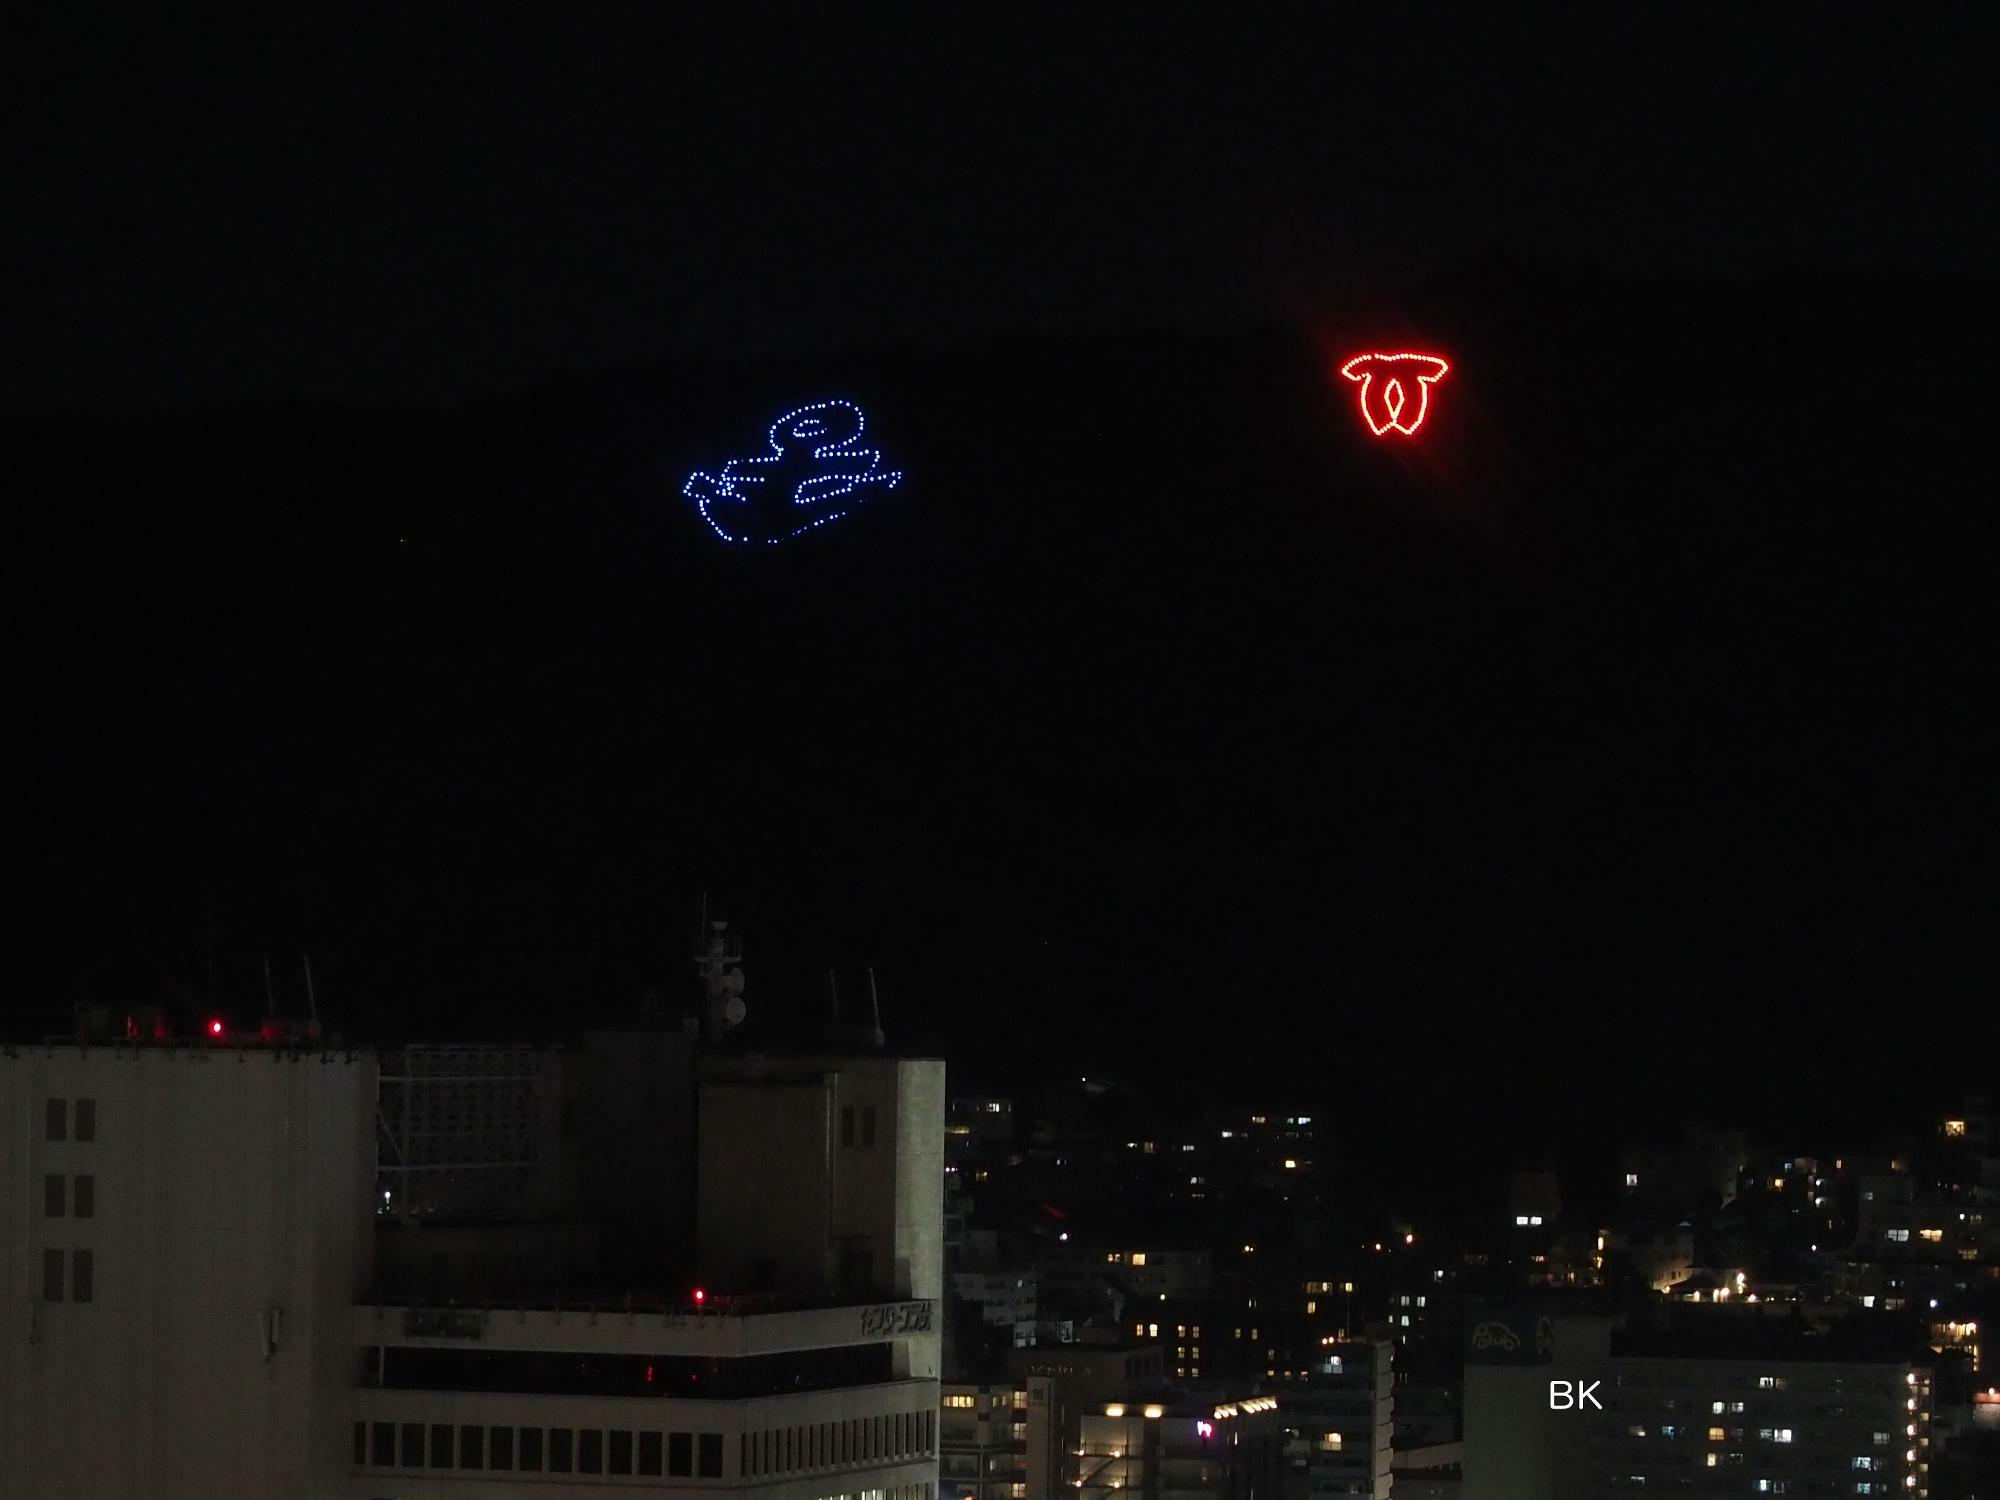 神戸市章の電飾もレッドに。